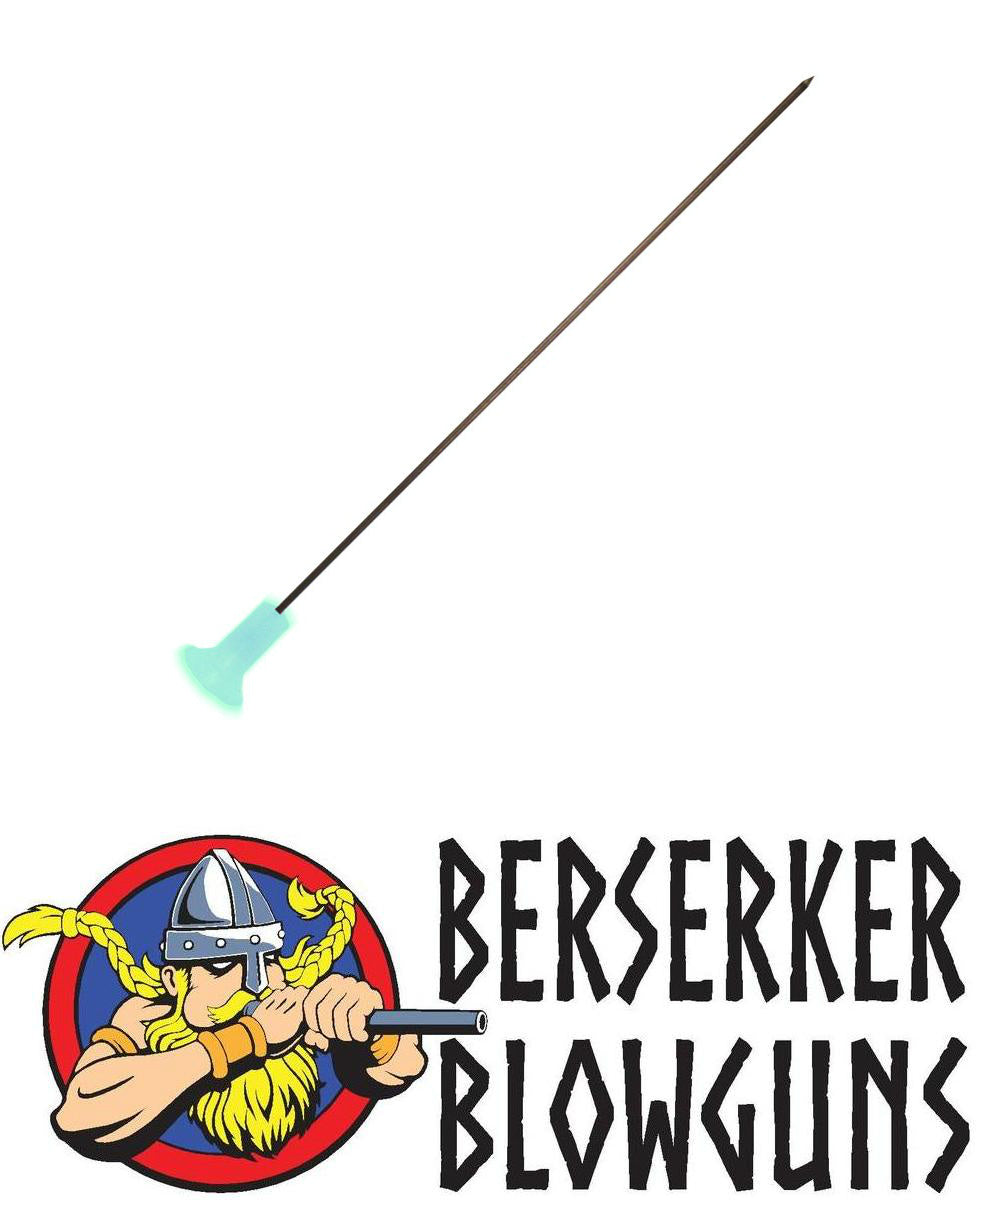 Berserker - .40 cal 5" Deep Penetrating Hunting Target Darts with GLOW IN THE DARK Cones